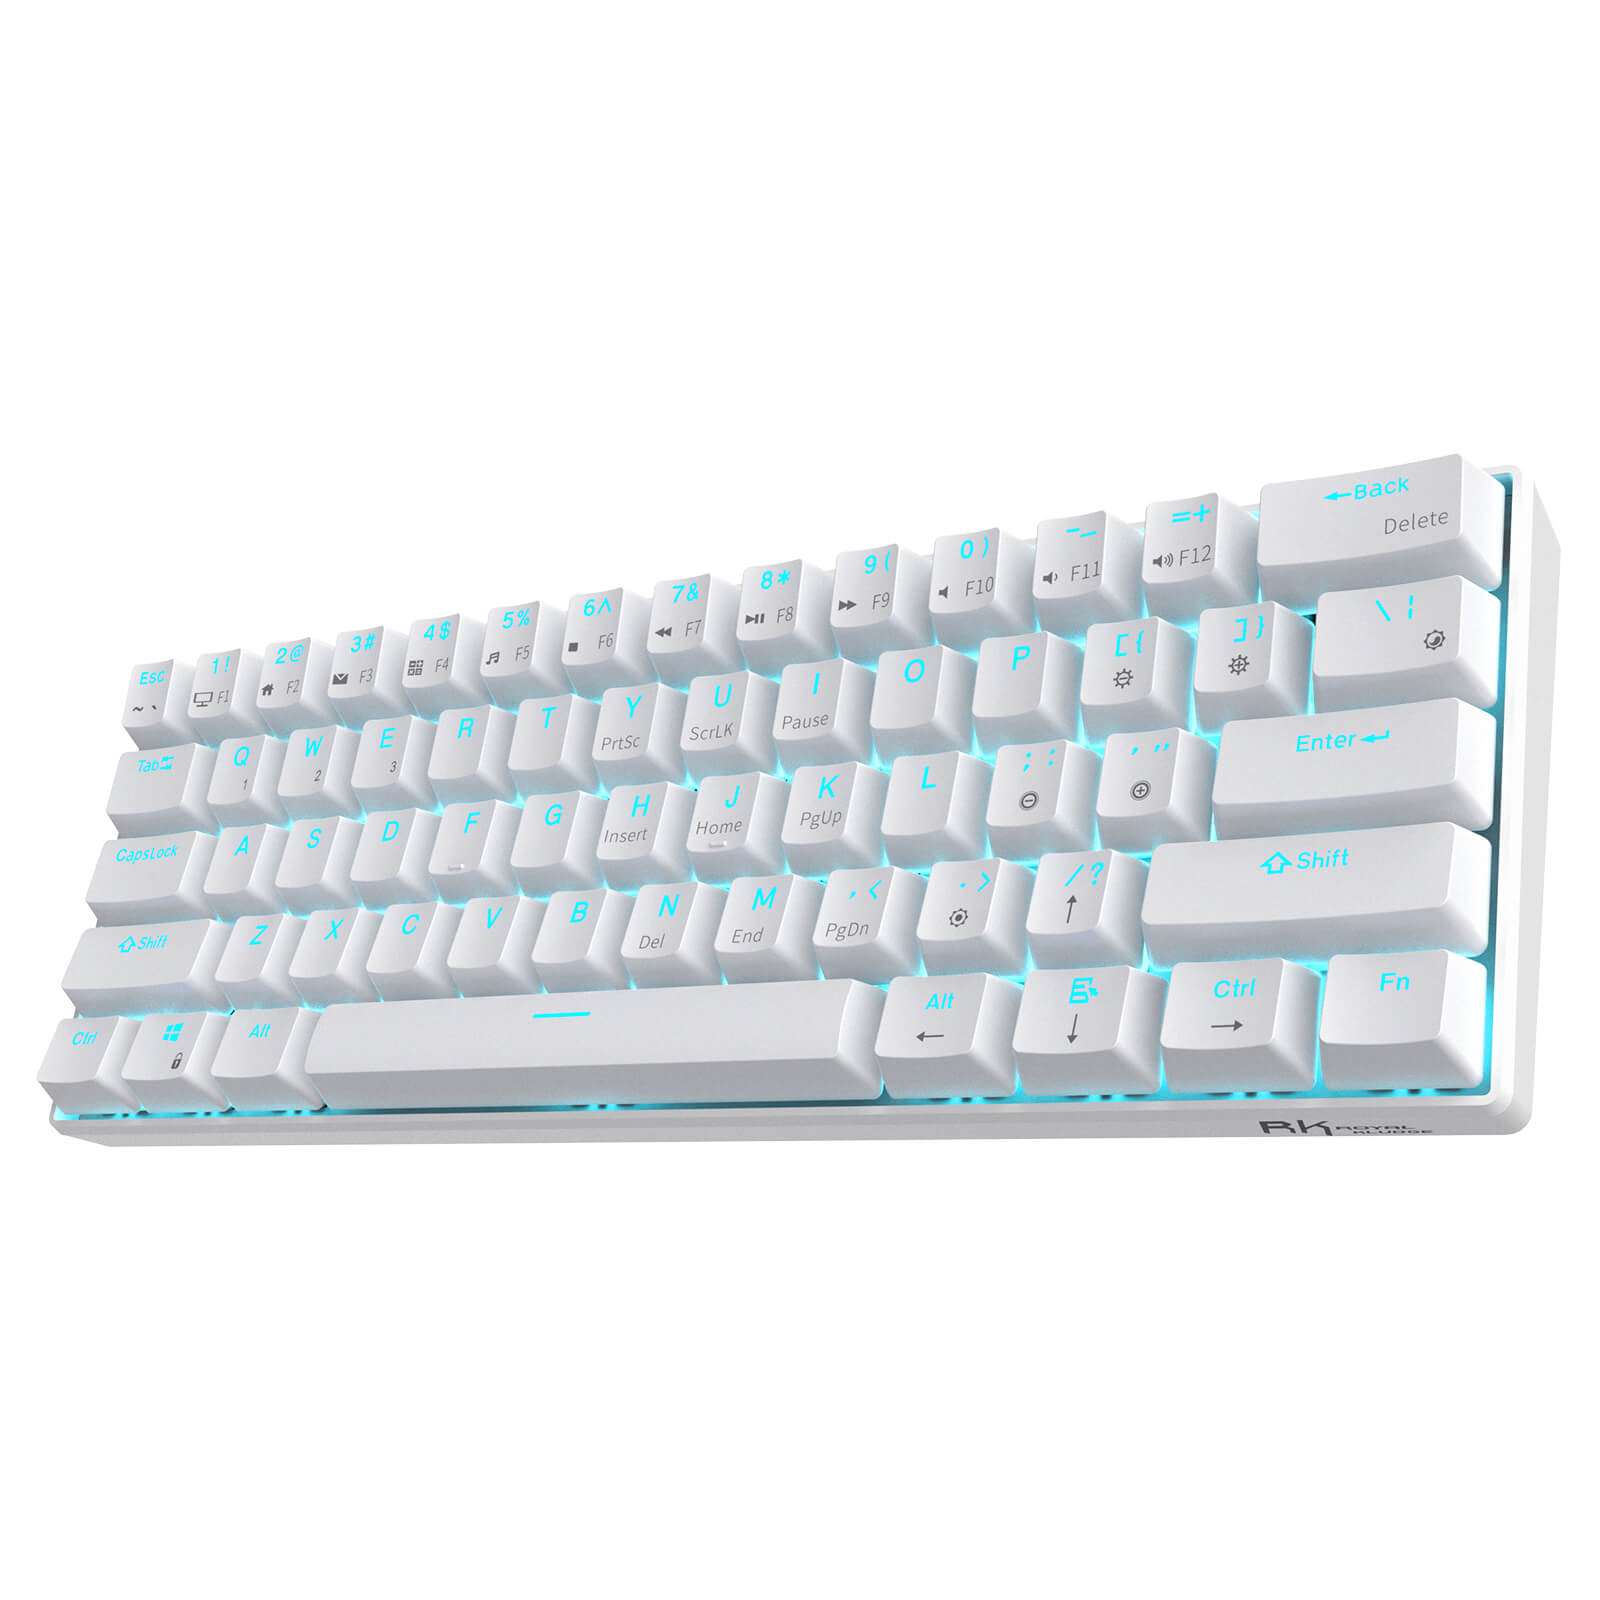 Royal Kludge White Keyboard